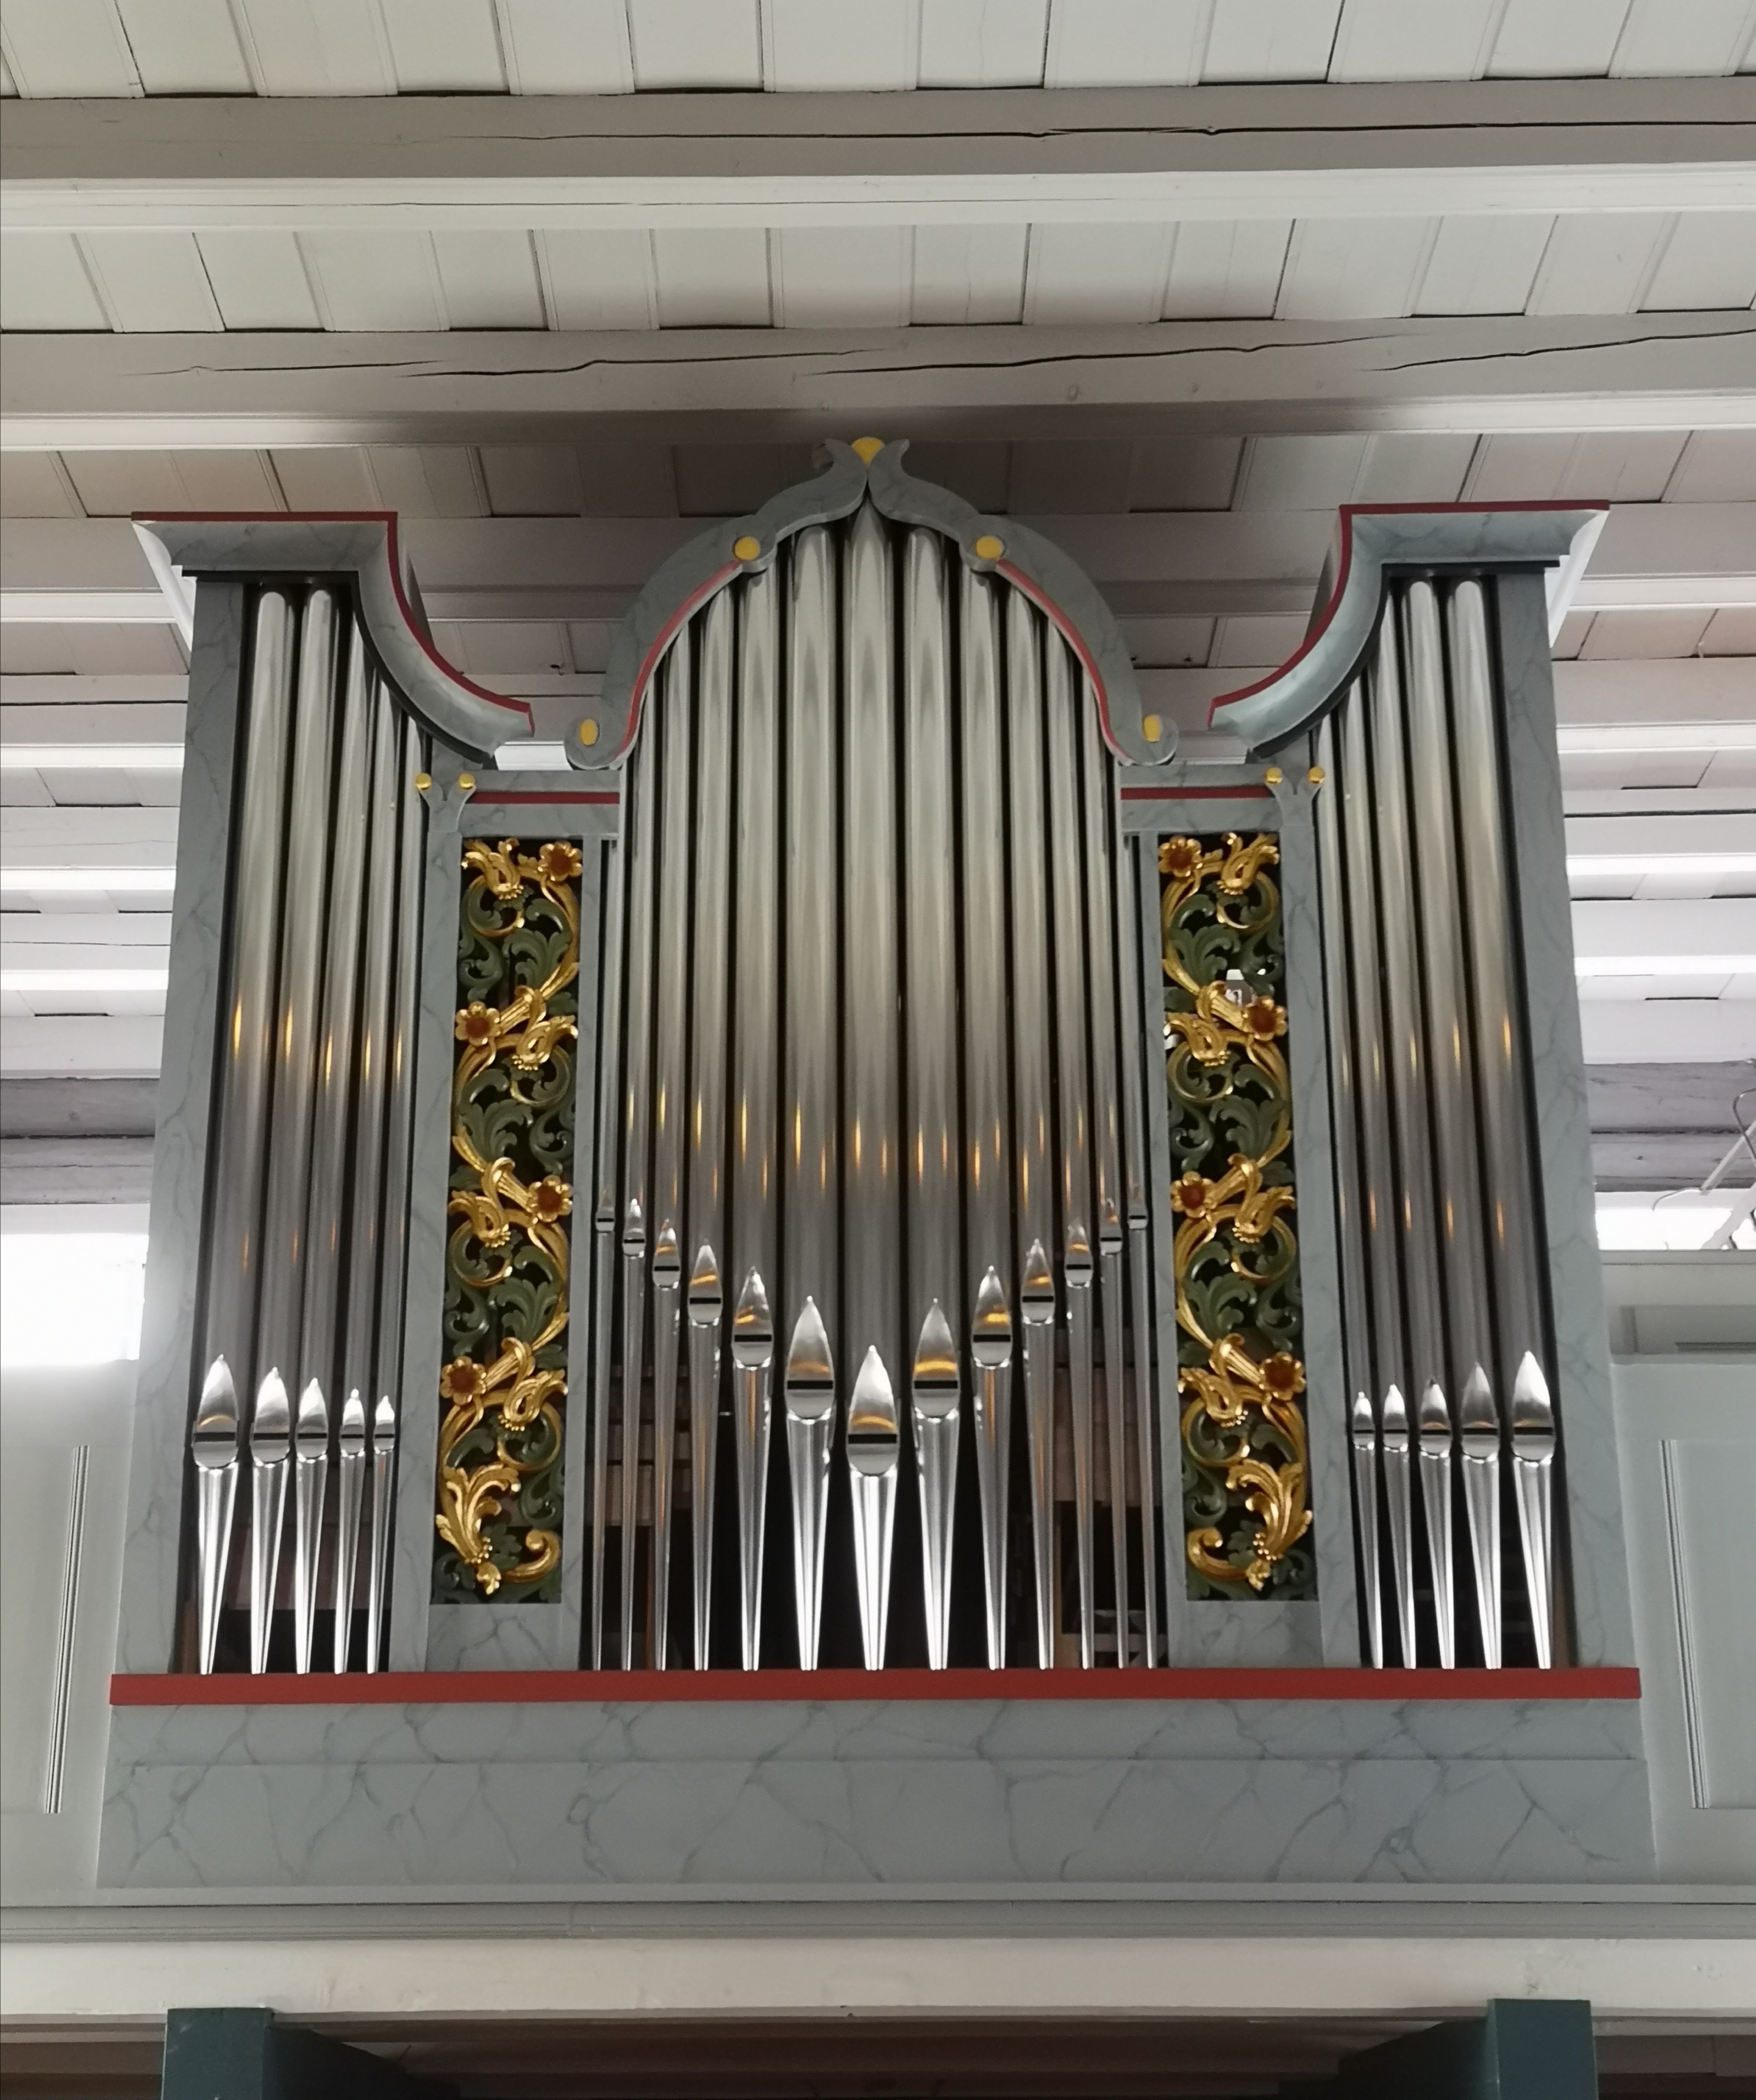 Disse vil bli ny organist i Øyer og Tretten kirker